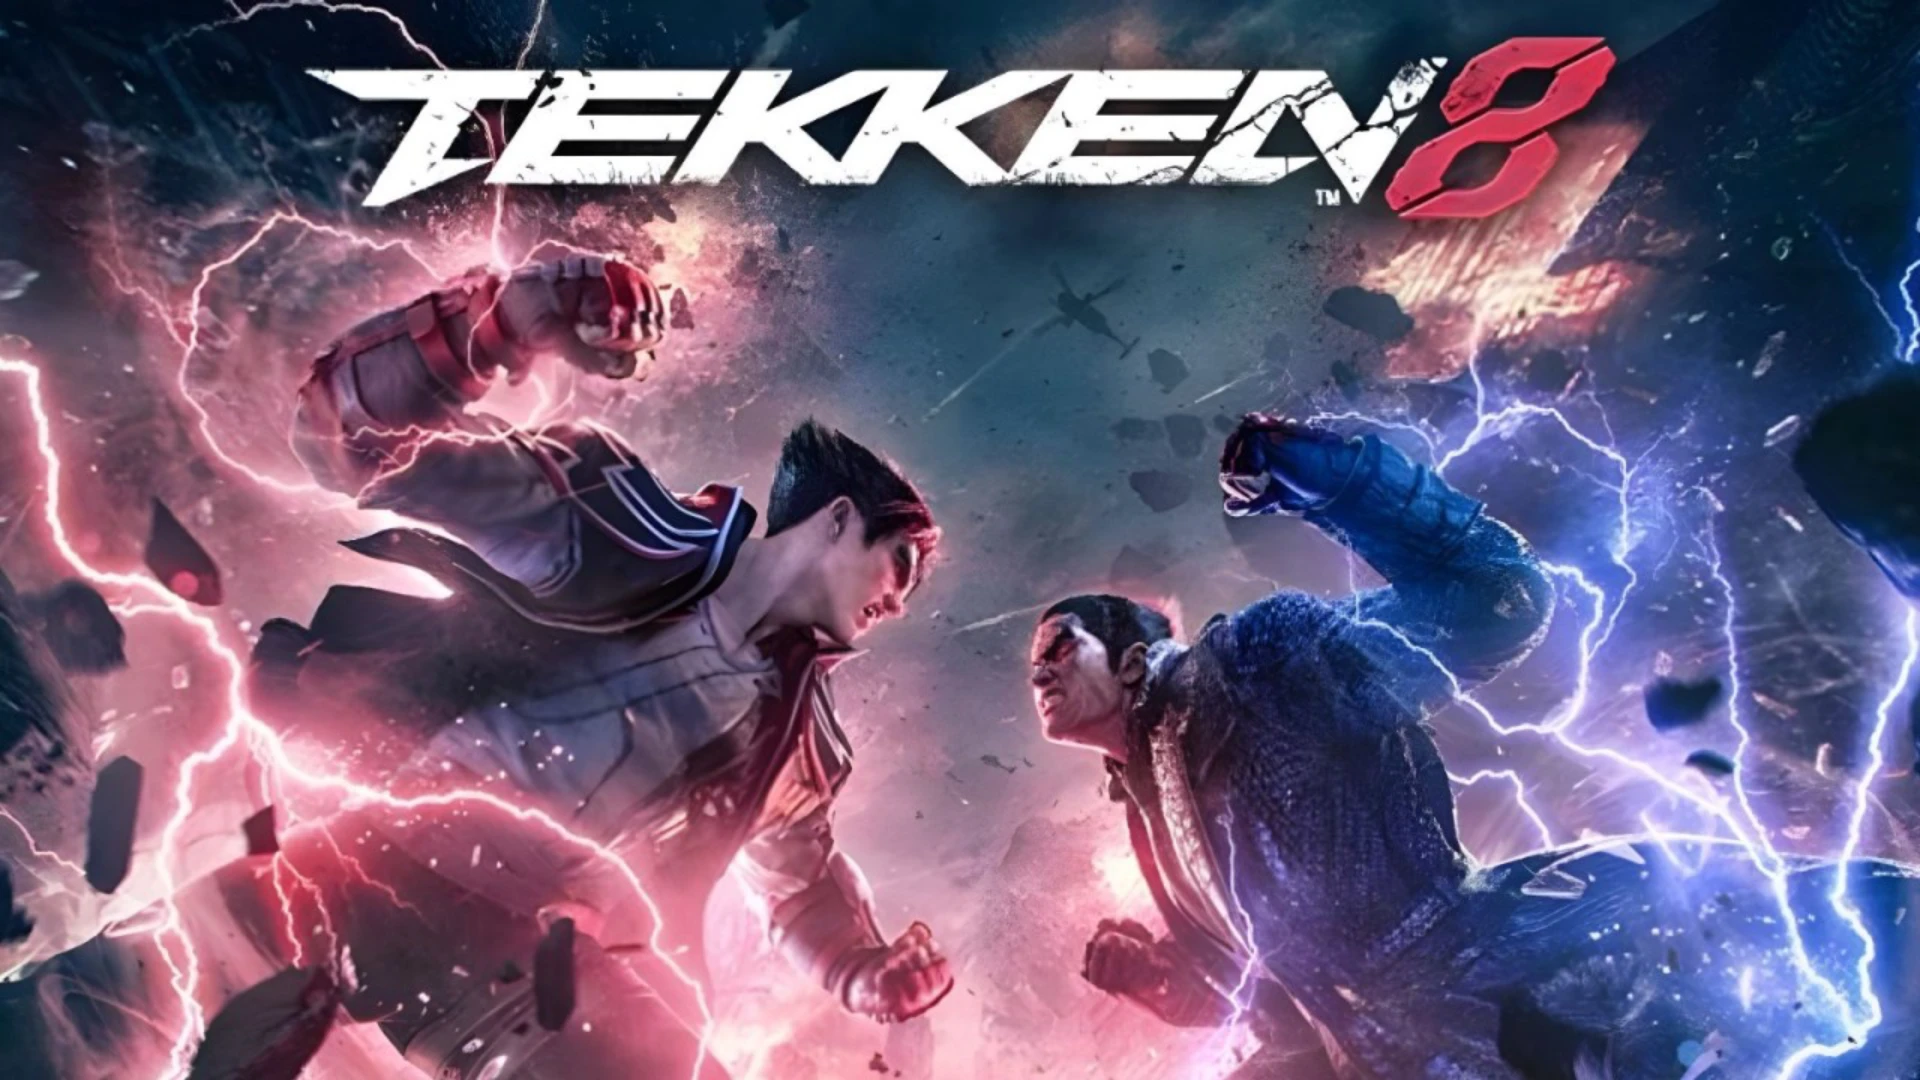  Tekken 8 Hintergrundbild 1920x1080. Tekken 8 Reaches 2 Million Copies Sold in Its First Month